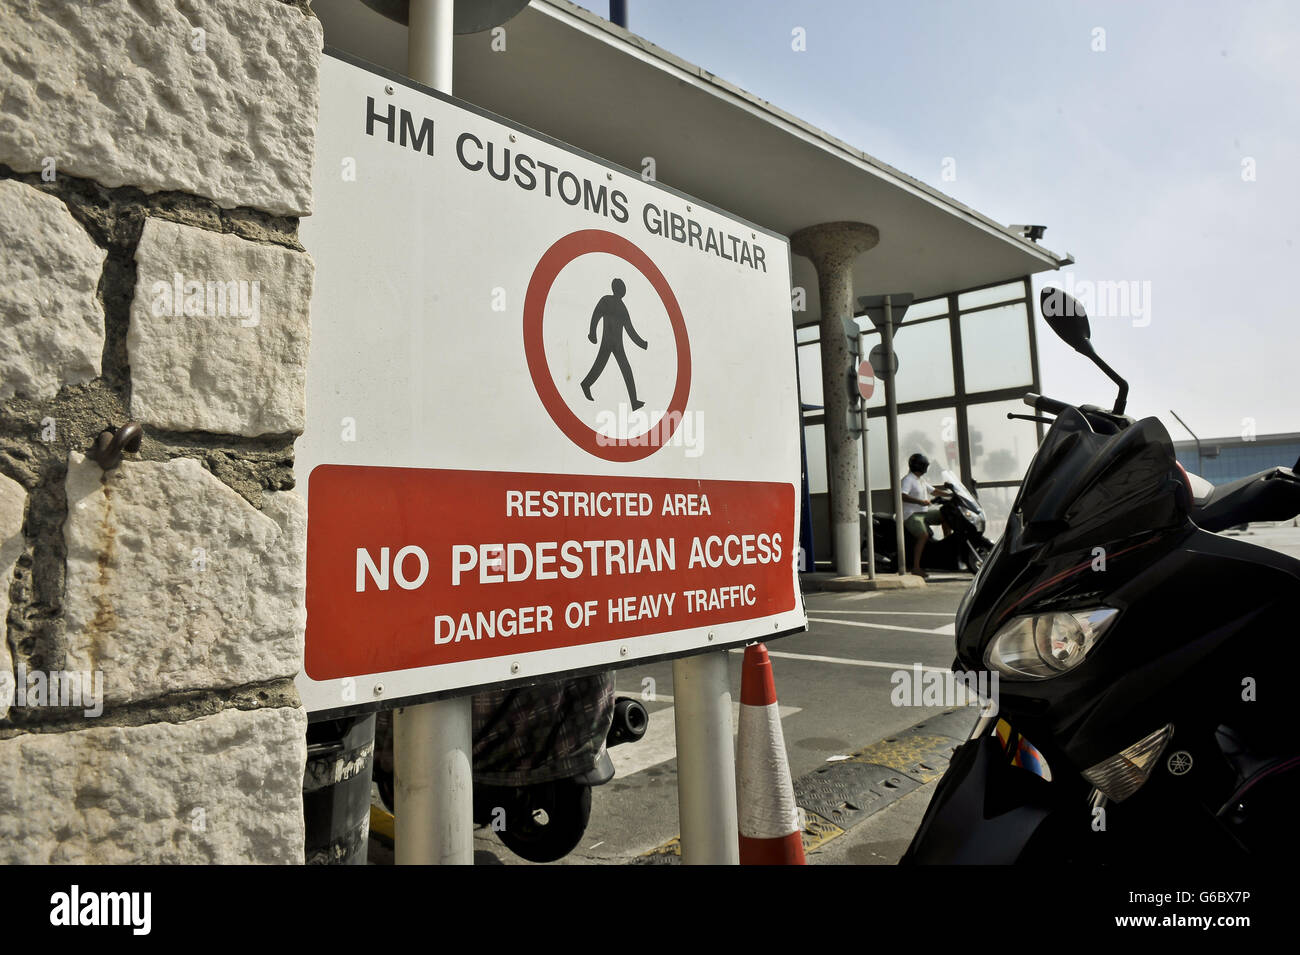 Un cartello doganale HM Gibilterra sul lato Gibilterra del confine spagnolo, in quanto la Spagna ha accettato di consentire agli osservatori della Commissione europea di raggiungere il suo confine con Gibilterra di valutare la legalità dei controlli sul traffico che ha causato una fila diplomatica con la Gran Bretagna. Foto Stock